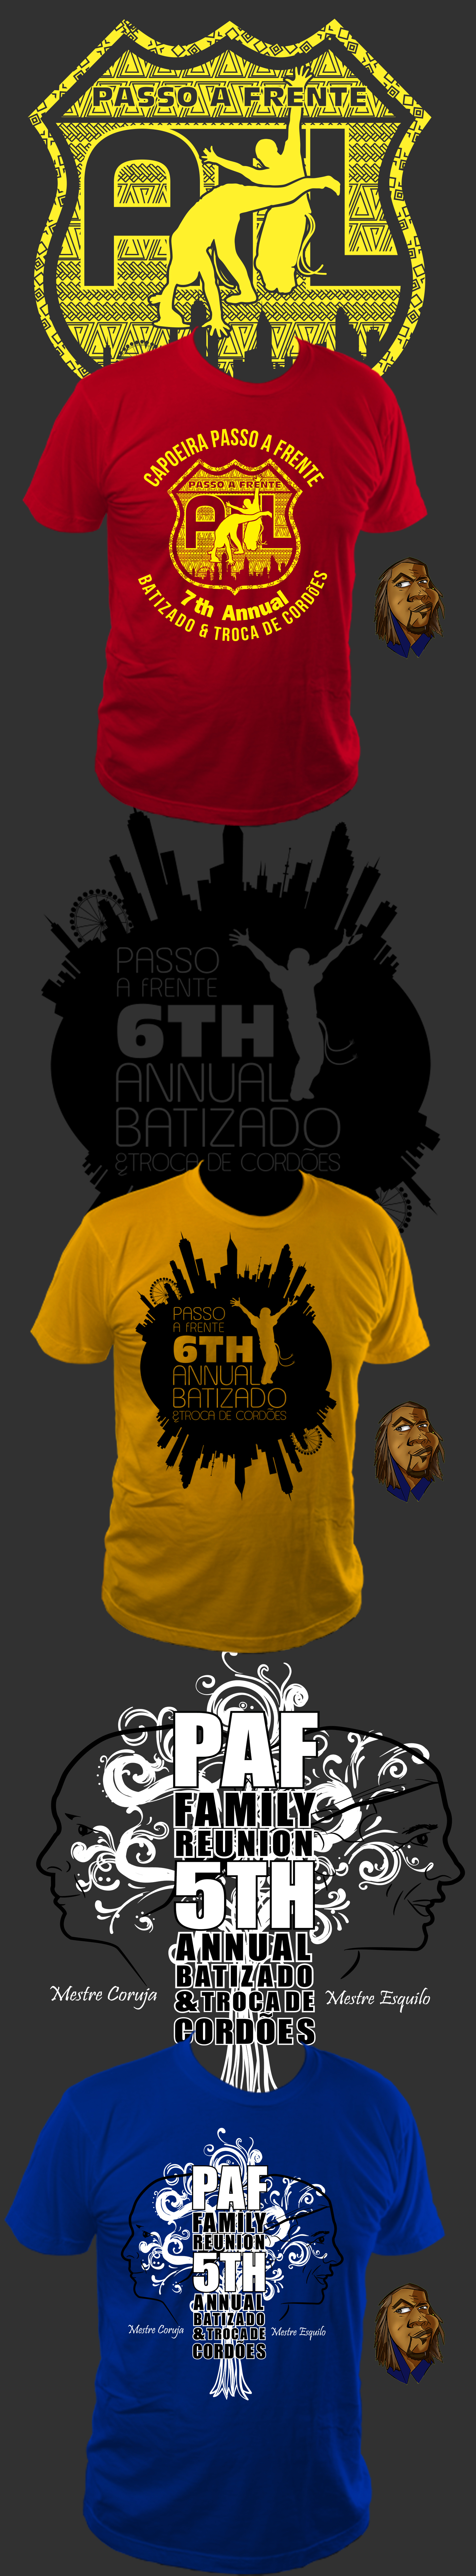 T-shirt event designs on Behance